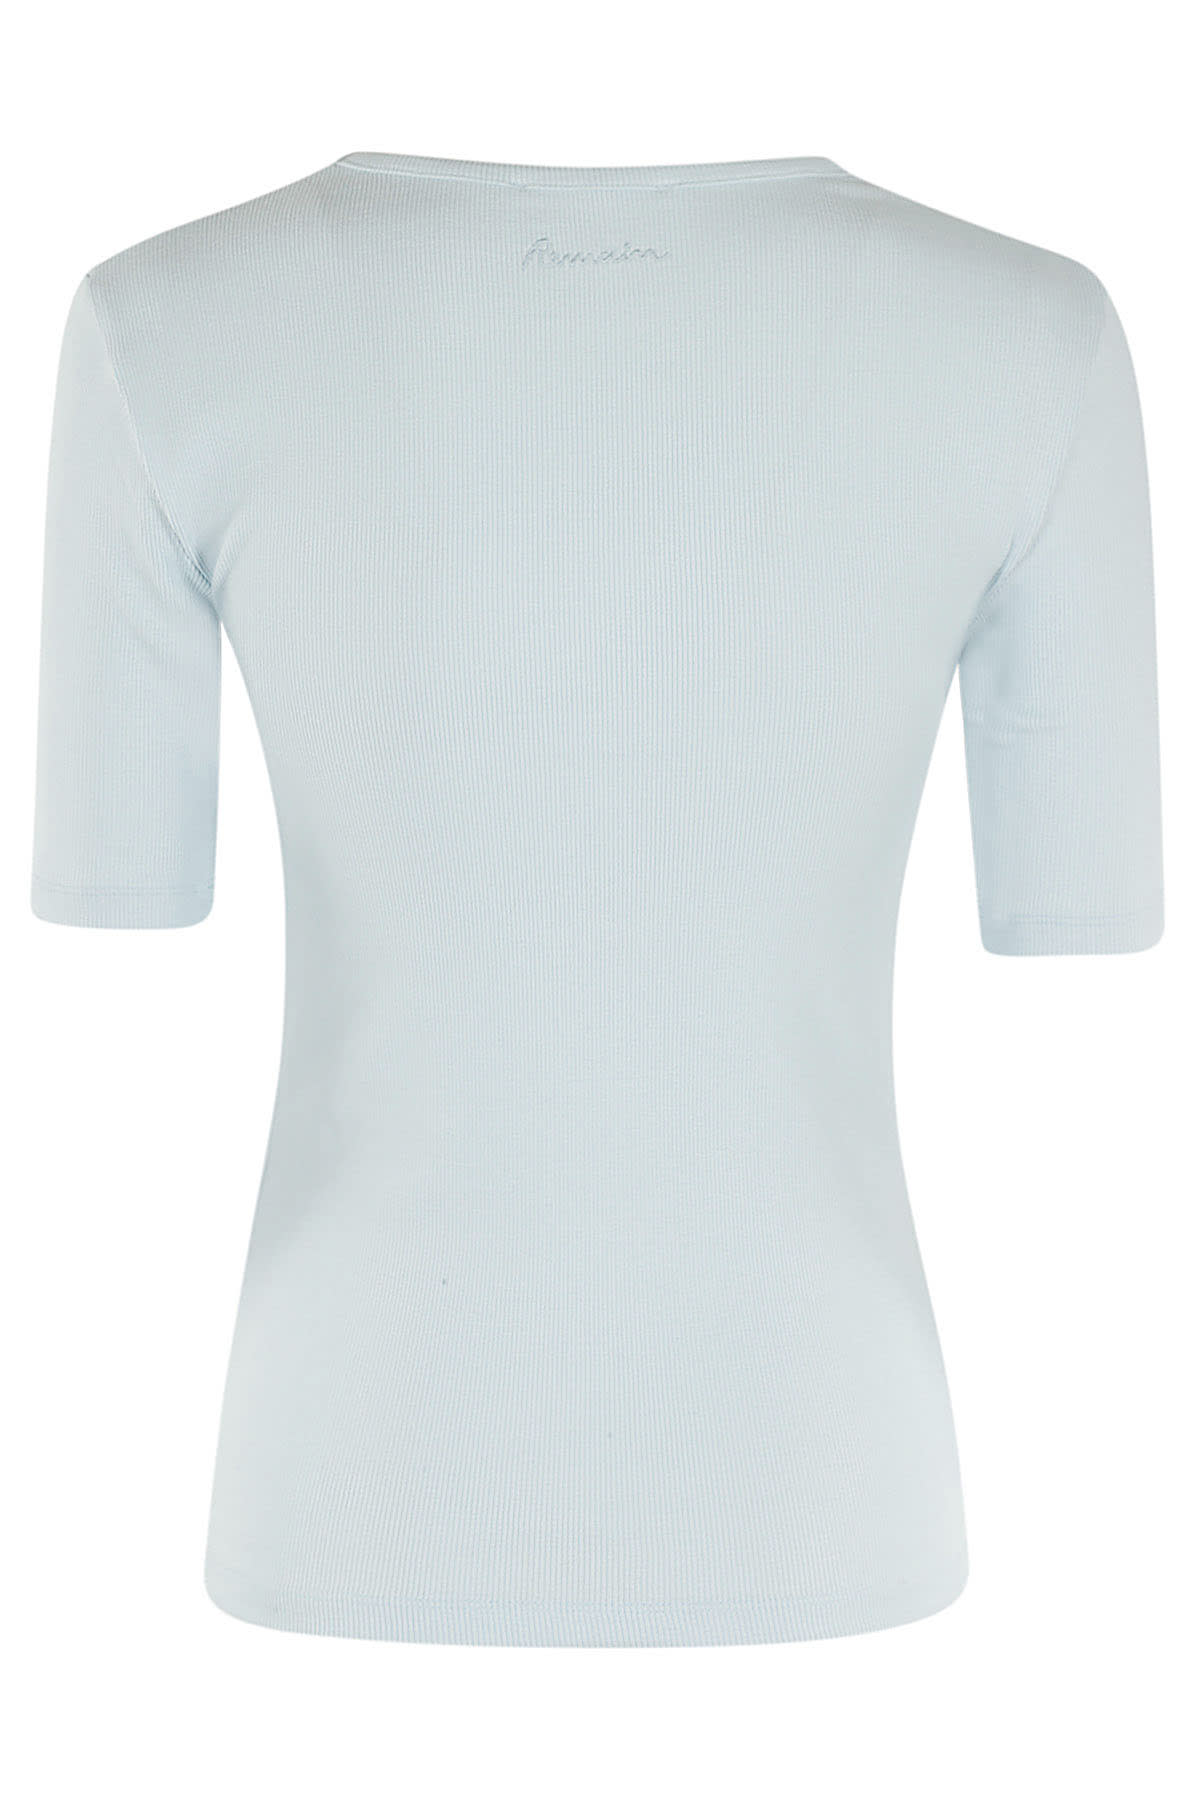 Shop Remain Birger Christensen Jersey Short Sleeve T Shirt